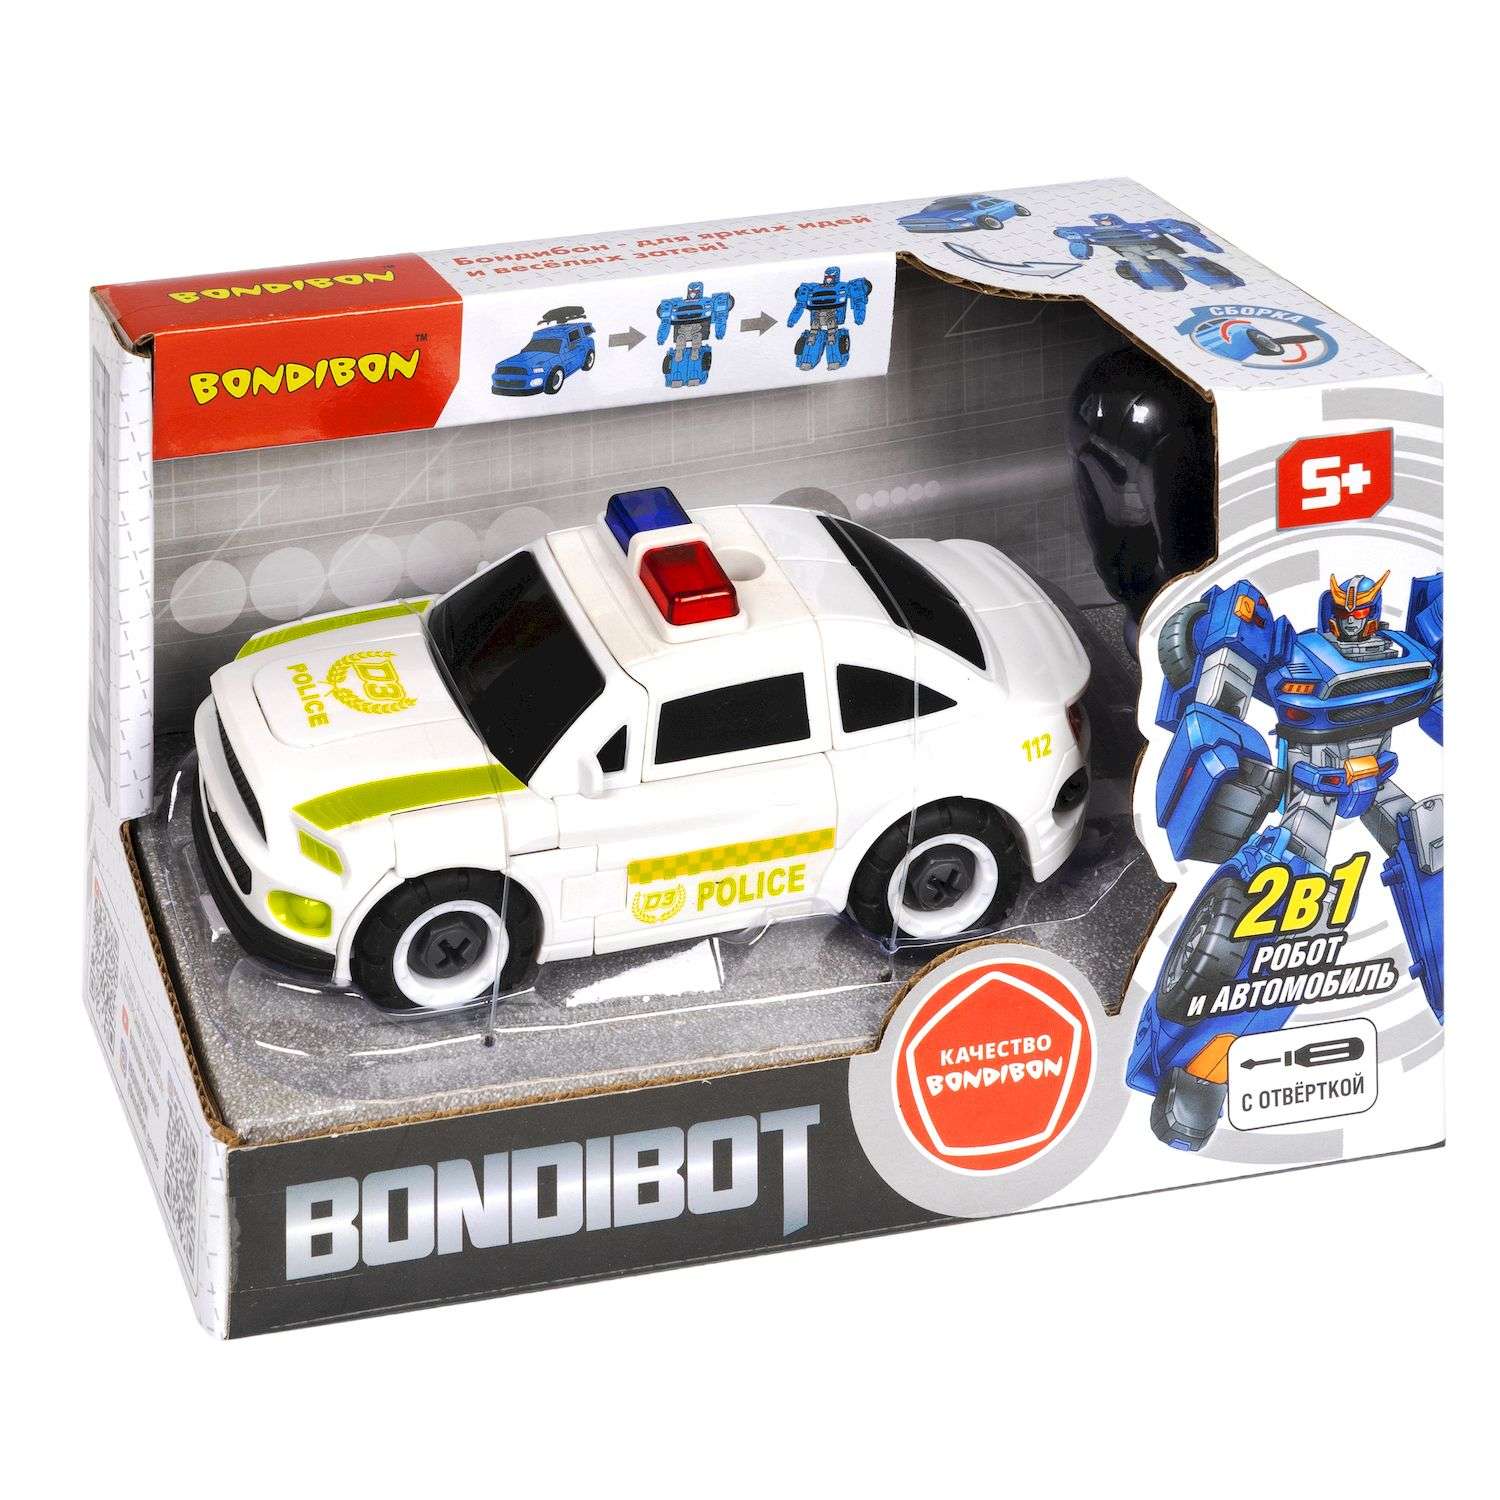 Трансформер BONDIBON Bondibot Робот-автомобиль 2 в 1 с отвёрткой Полиция белого цвета - фото 3